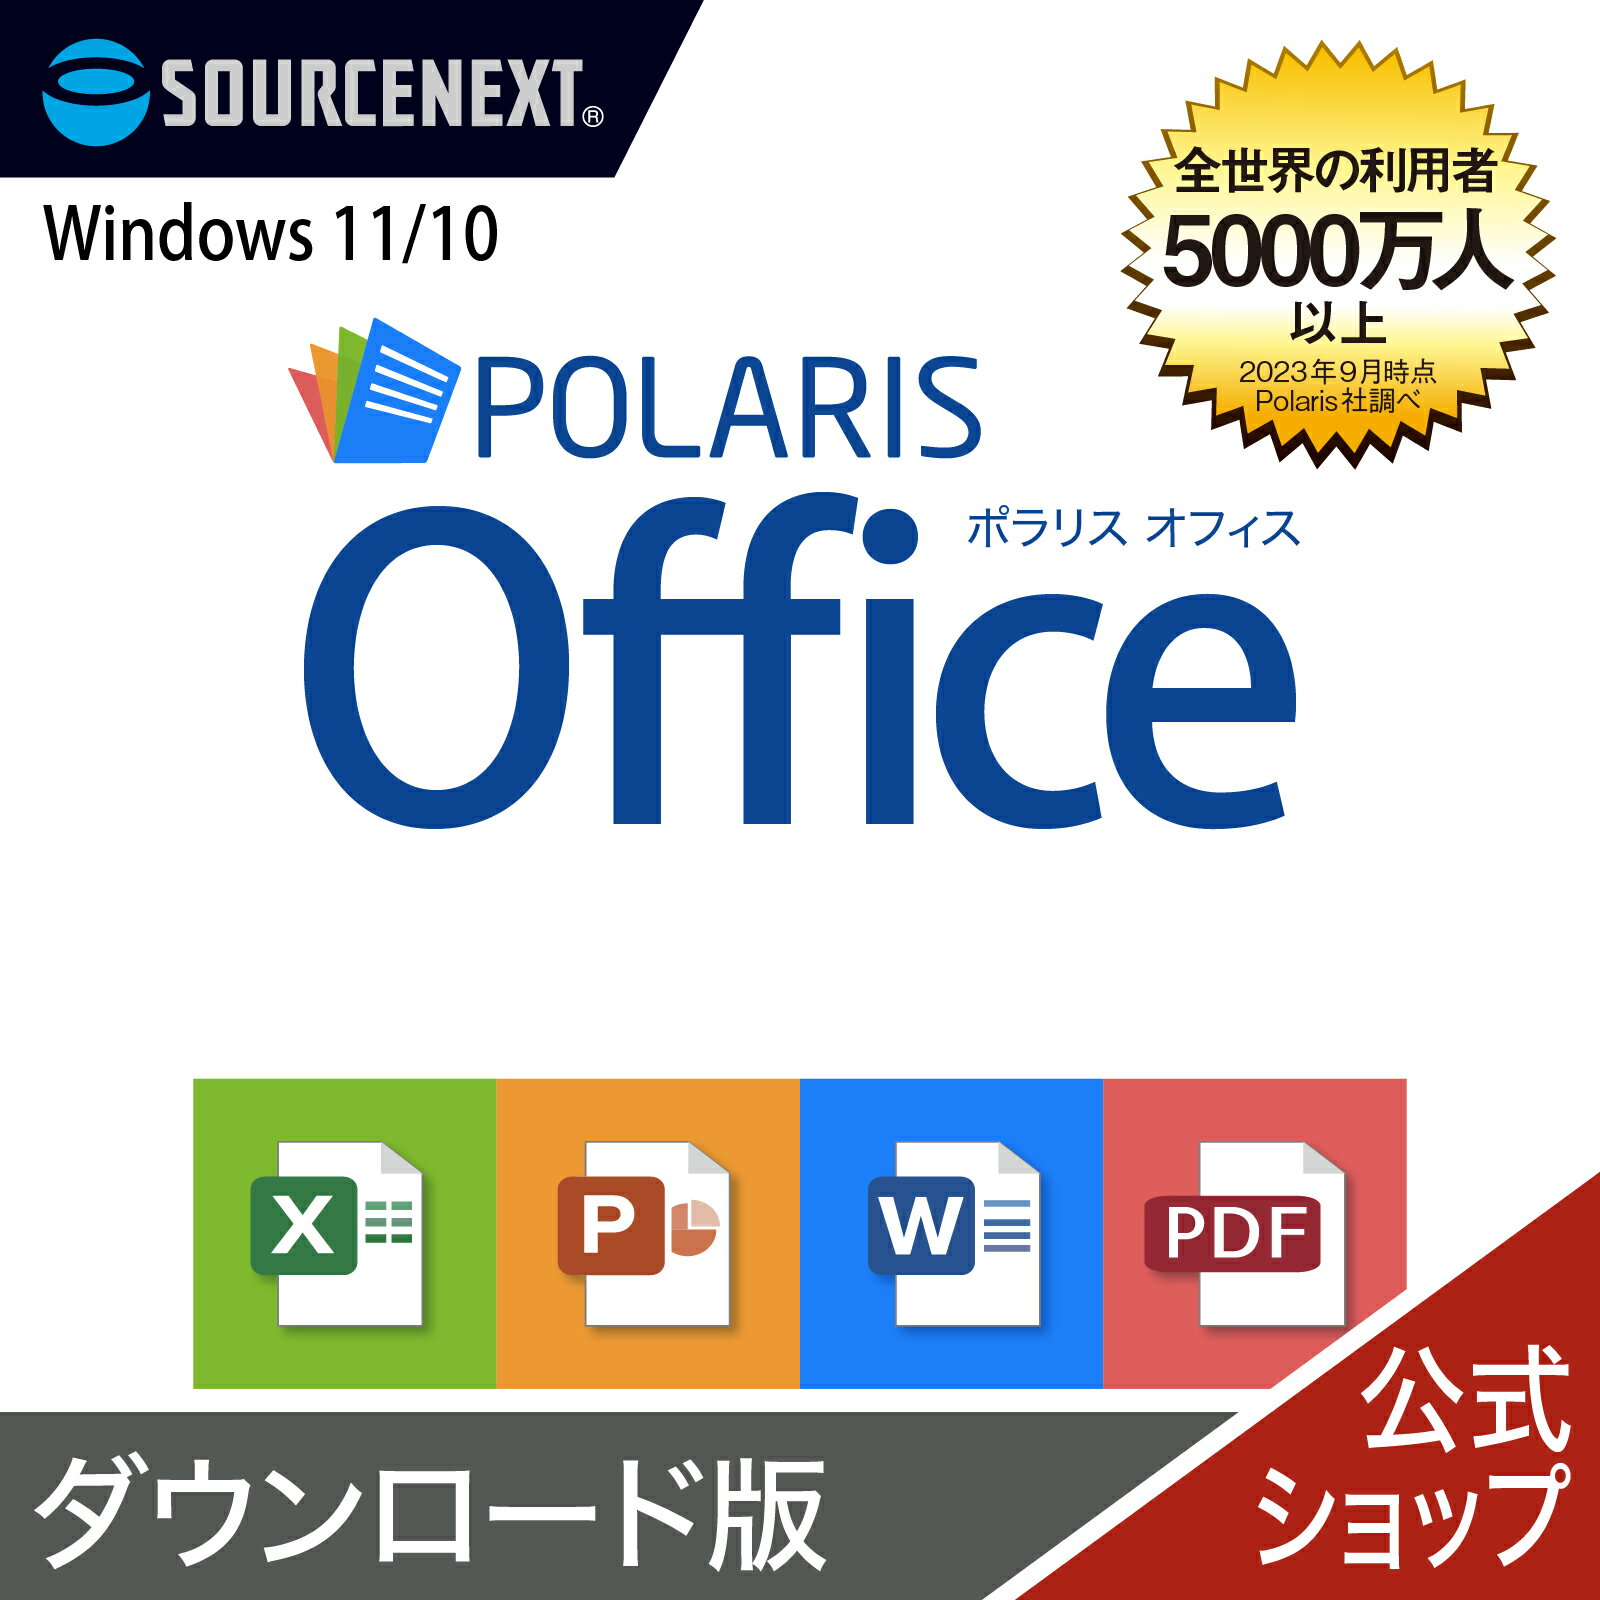 【マラソン限定価格】Polaris Office　【ダウンロード版】DL_SNR [Windows用][オフィスソフト] ポラリス Microsoft Office オフィス 互換性 Excel PowerPoint Word パワーポイント エクセルソフト ワード